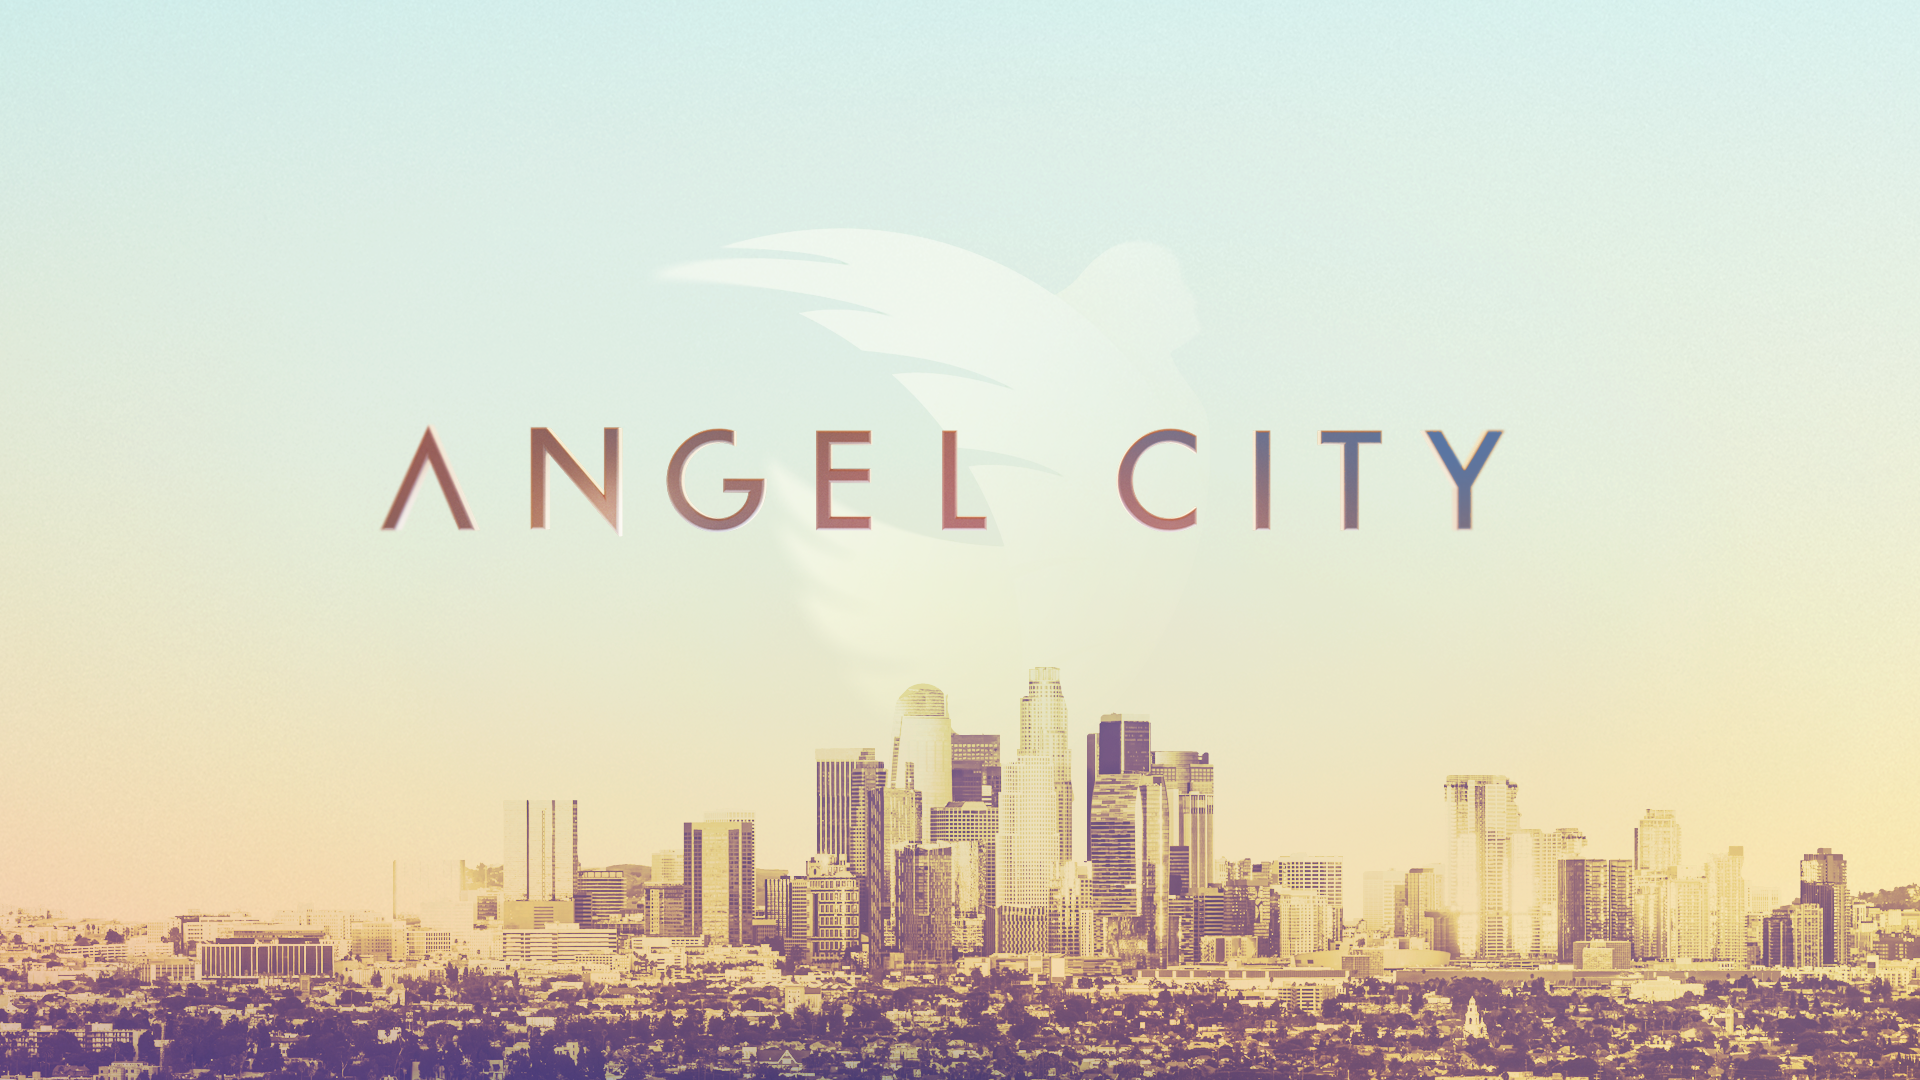 Angel-city-v12-01.png